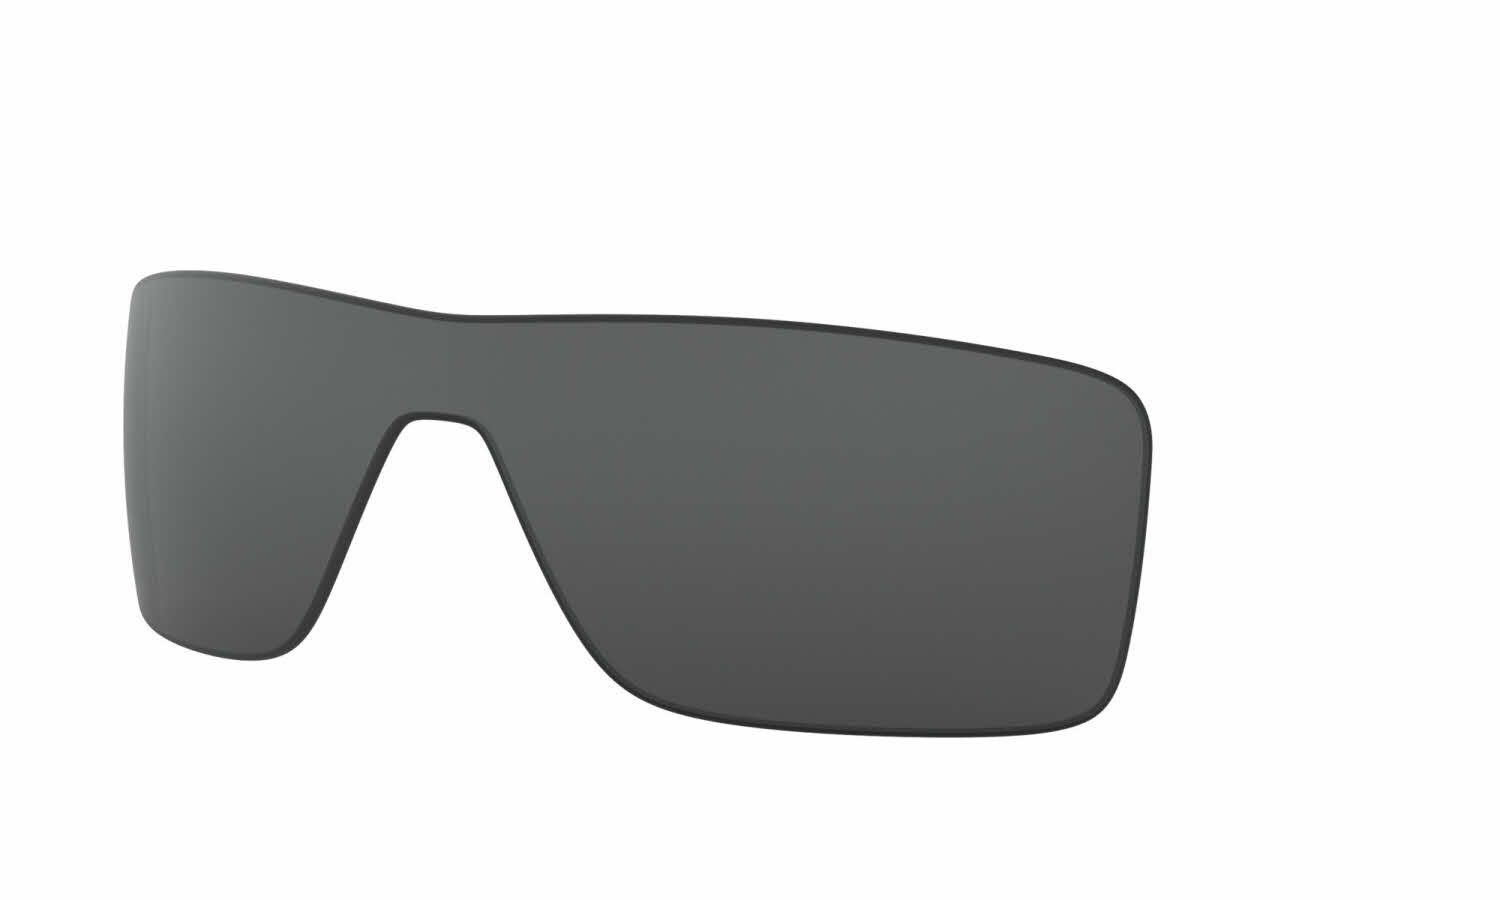 oakley sunglasses lenses